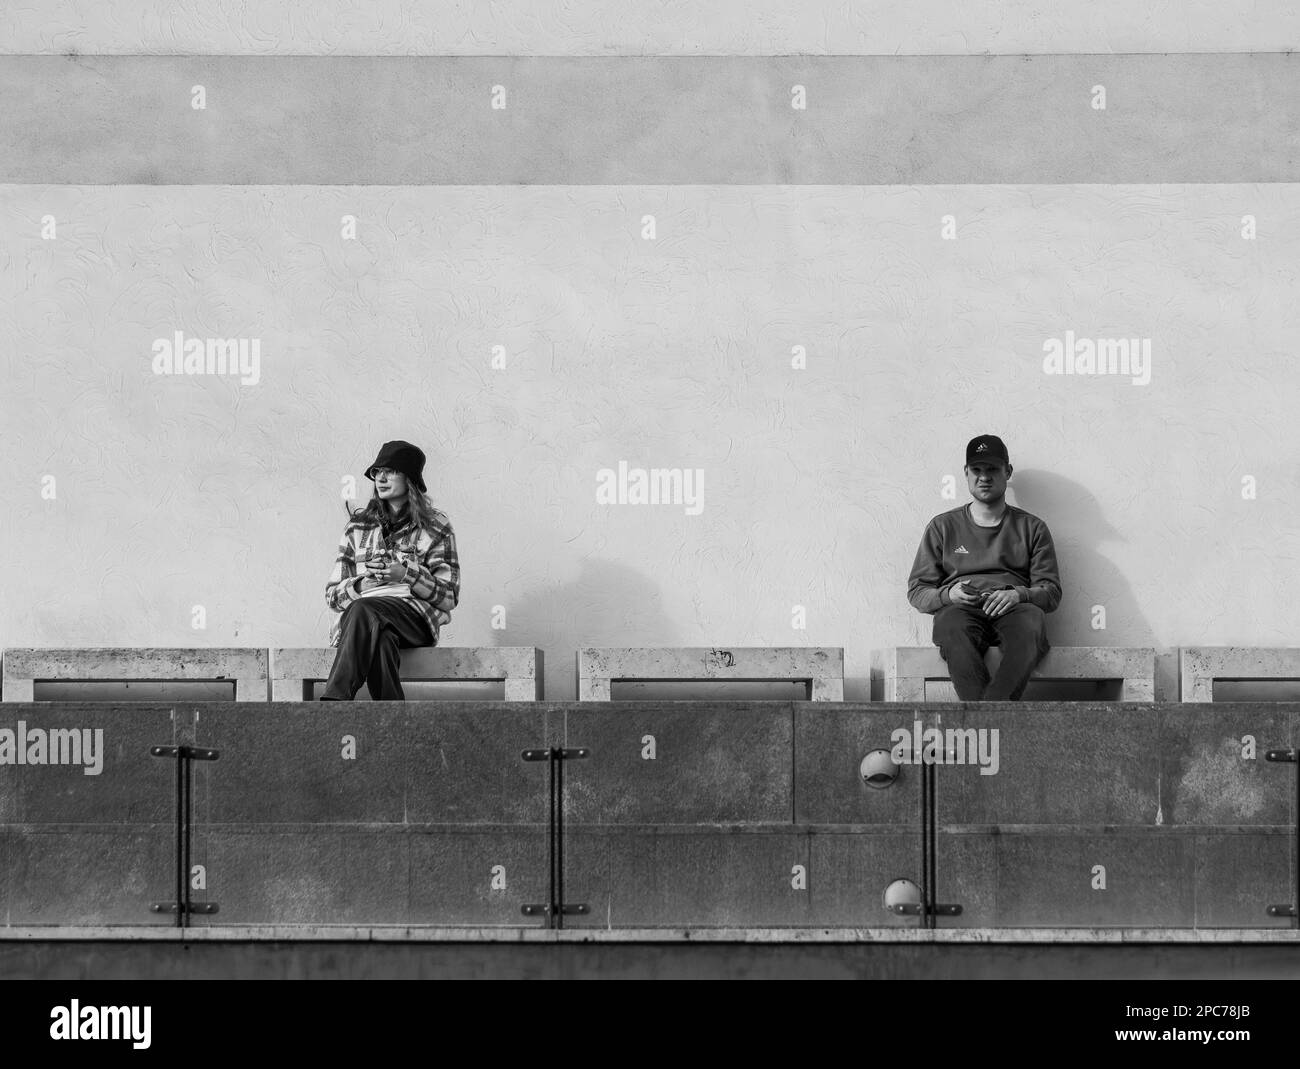 Bucarest, Romania - 02.25.2023: Fotografia di strada nel centro di Bucarest. Una giovane donna e un uomo seduto o in attesa su una panchina. Foto Stock